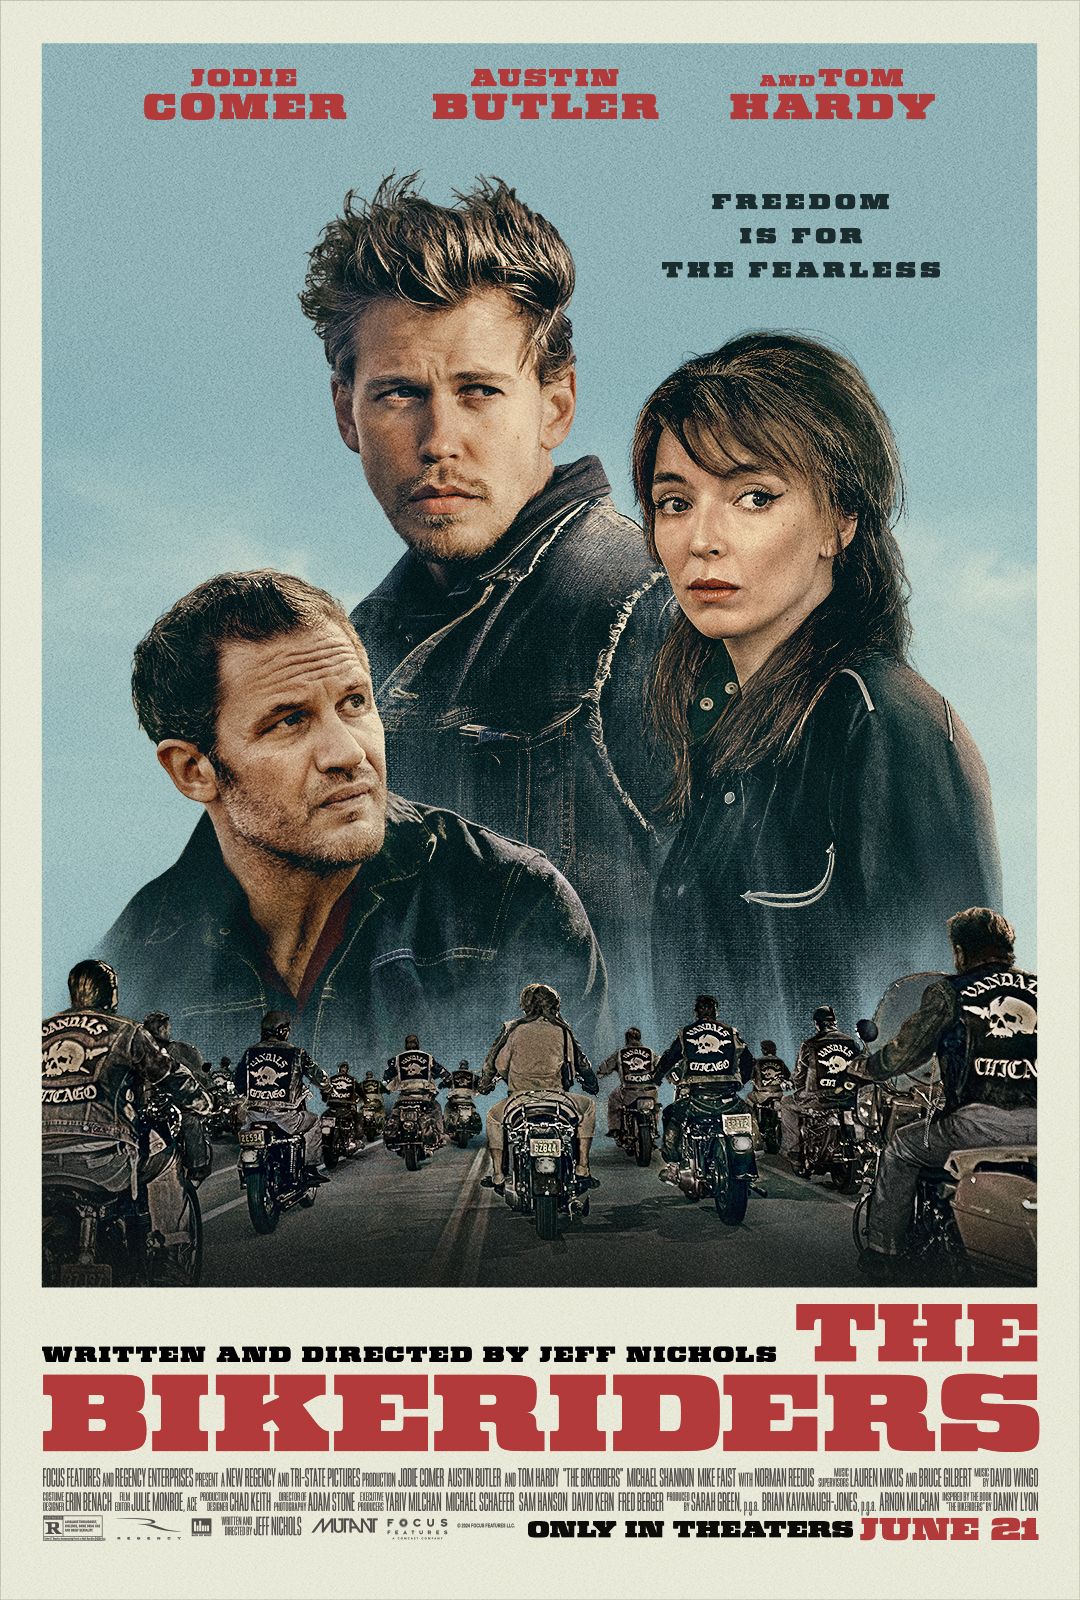 El póster de la película Bike Riders muestra a Jodie Comer, Austin Butler y Tom Hardy con una pandilla de motociclistas.